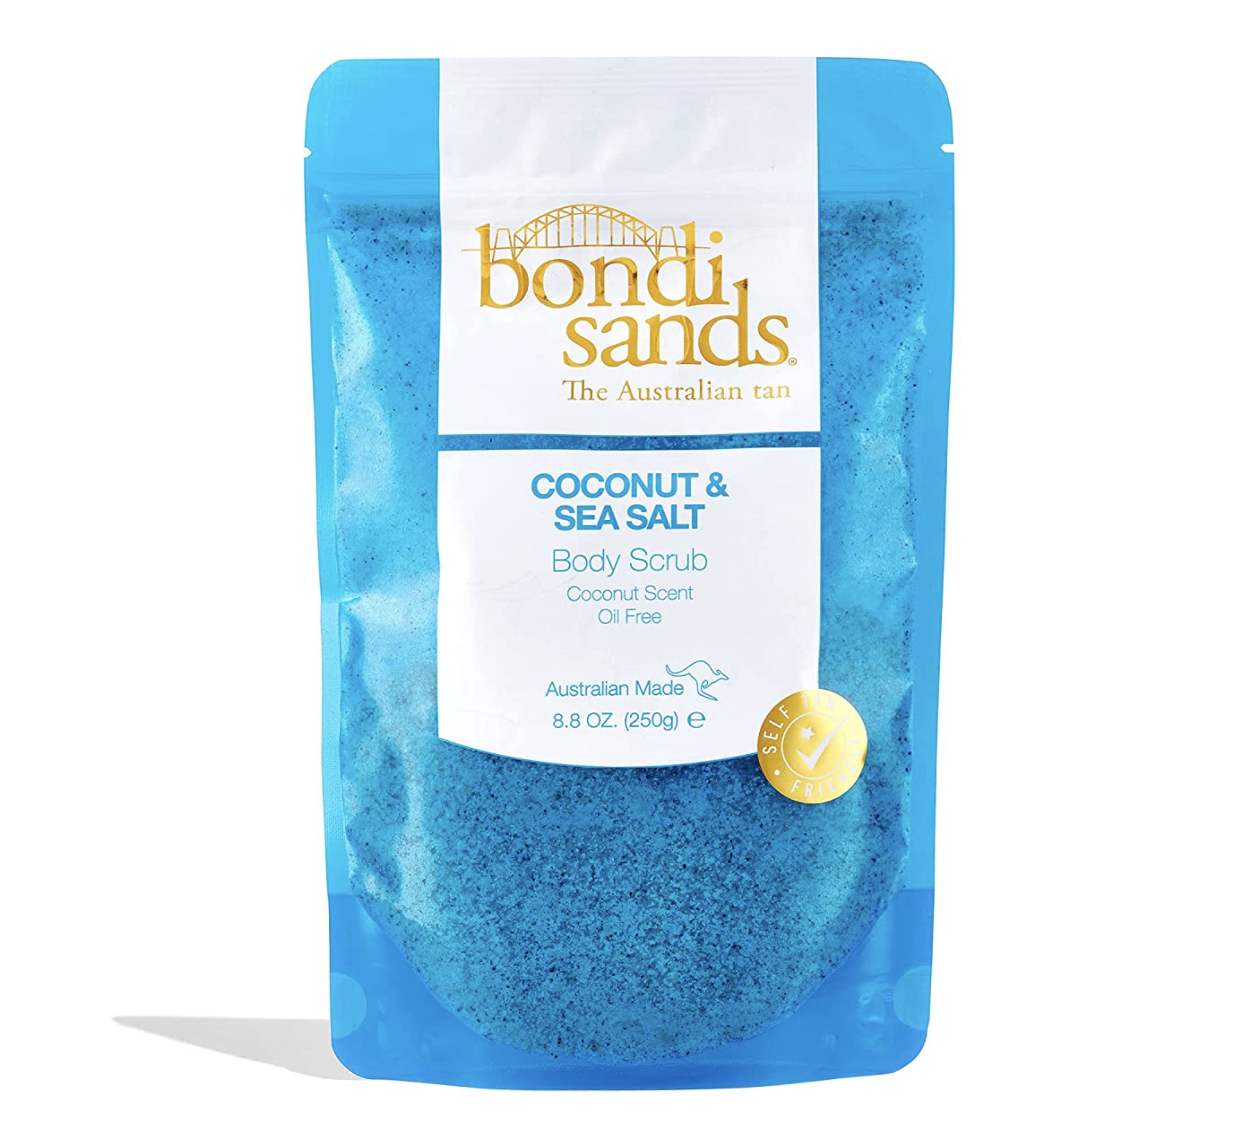 Coconut & Sea Salt Body Scrub